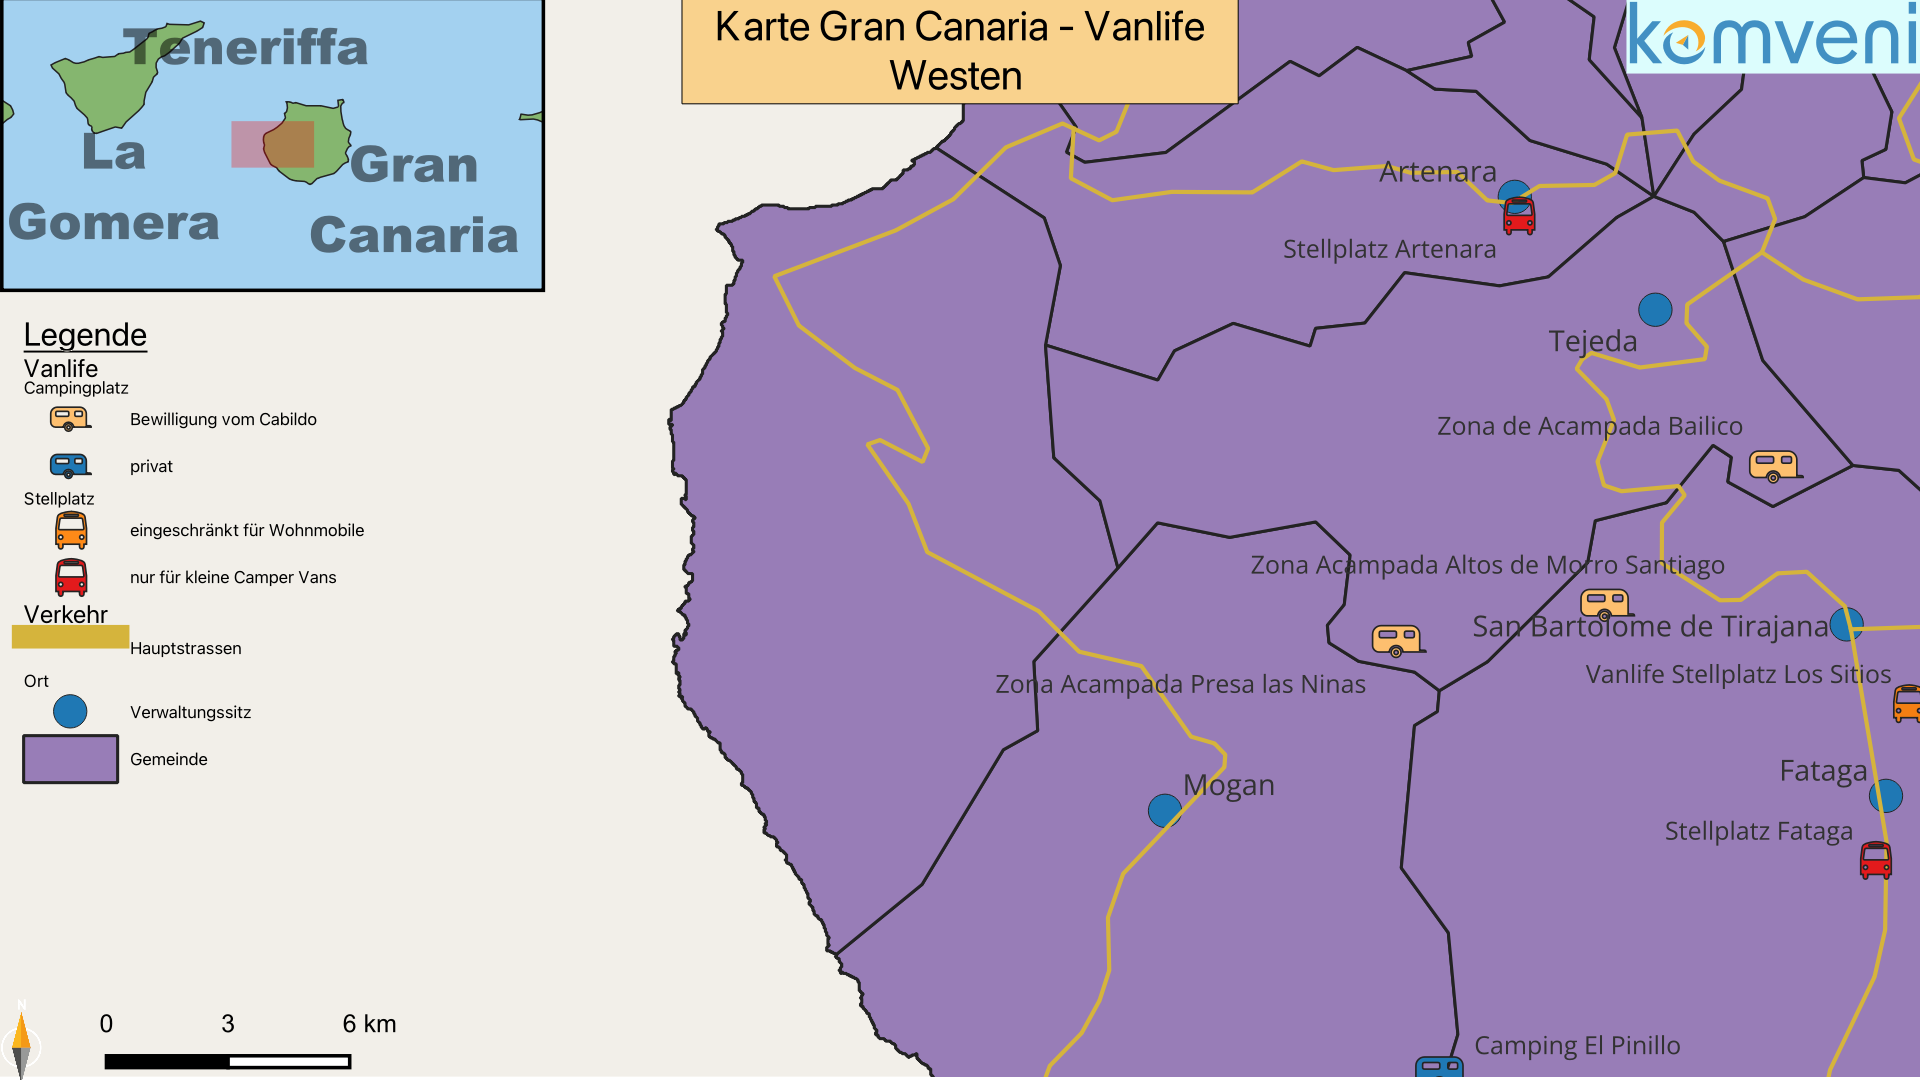 Karte Gran Canaria Vanlife Westen